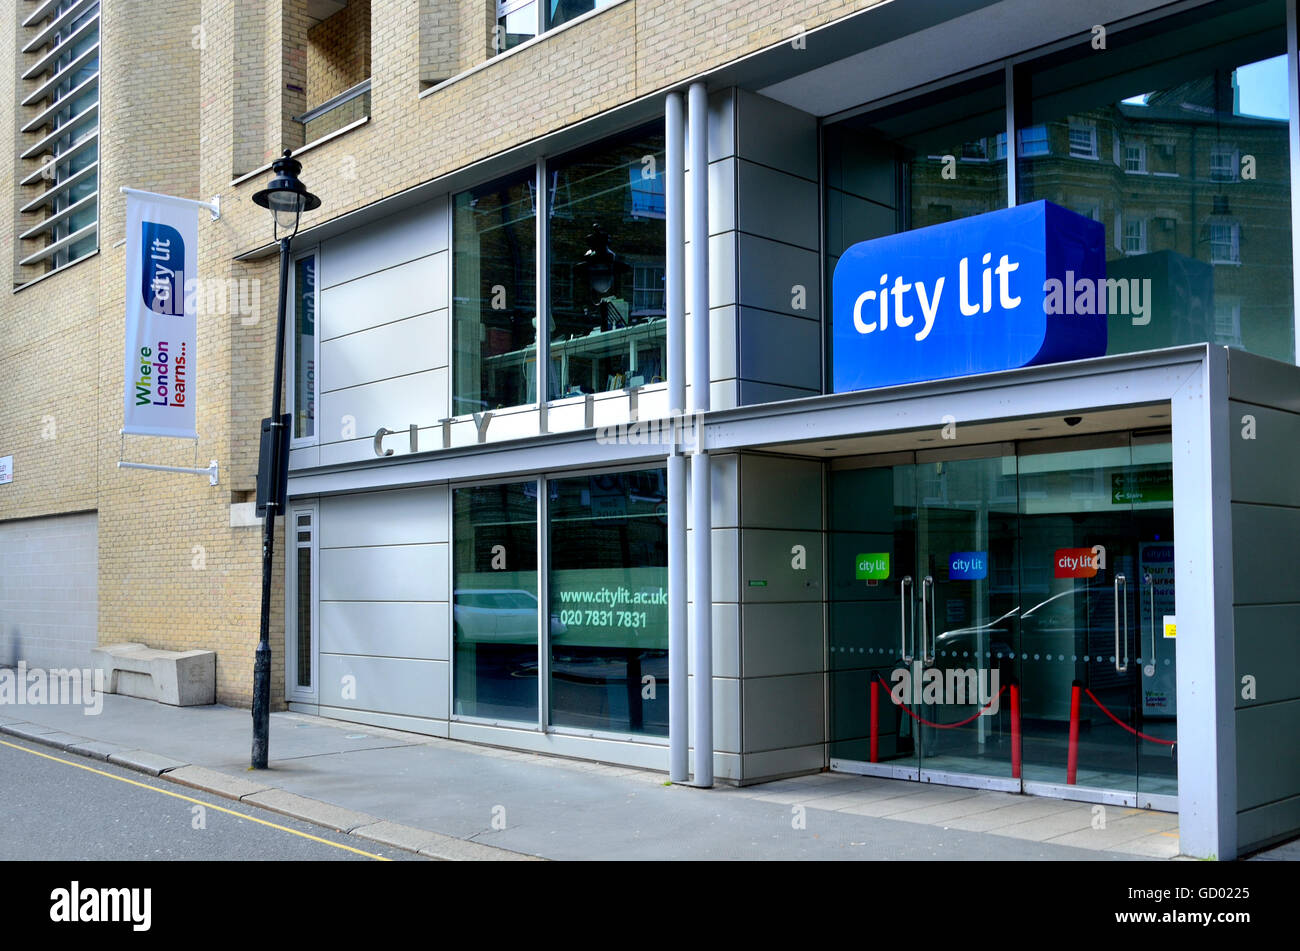 Londres, Angleterre, Royaume-Uni. City Lit college de 1-10 Keeley Street, Covent Garden - offrant des offres de formation continue. Banque D'Images